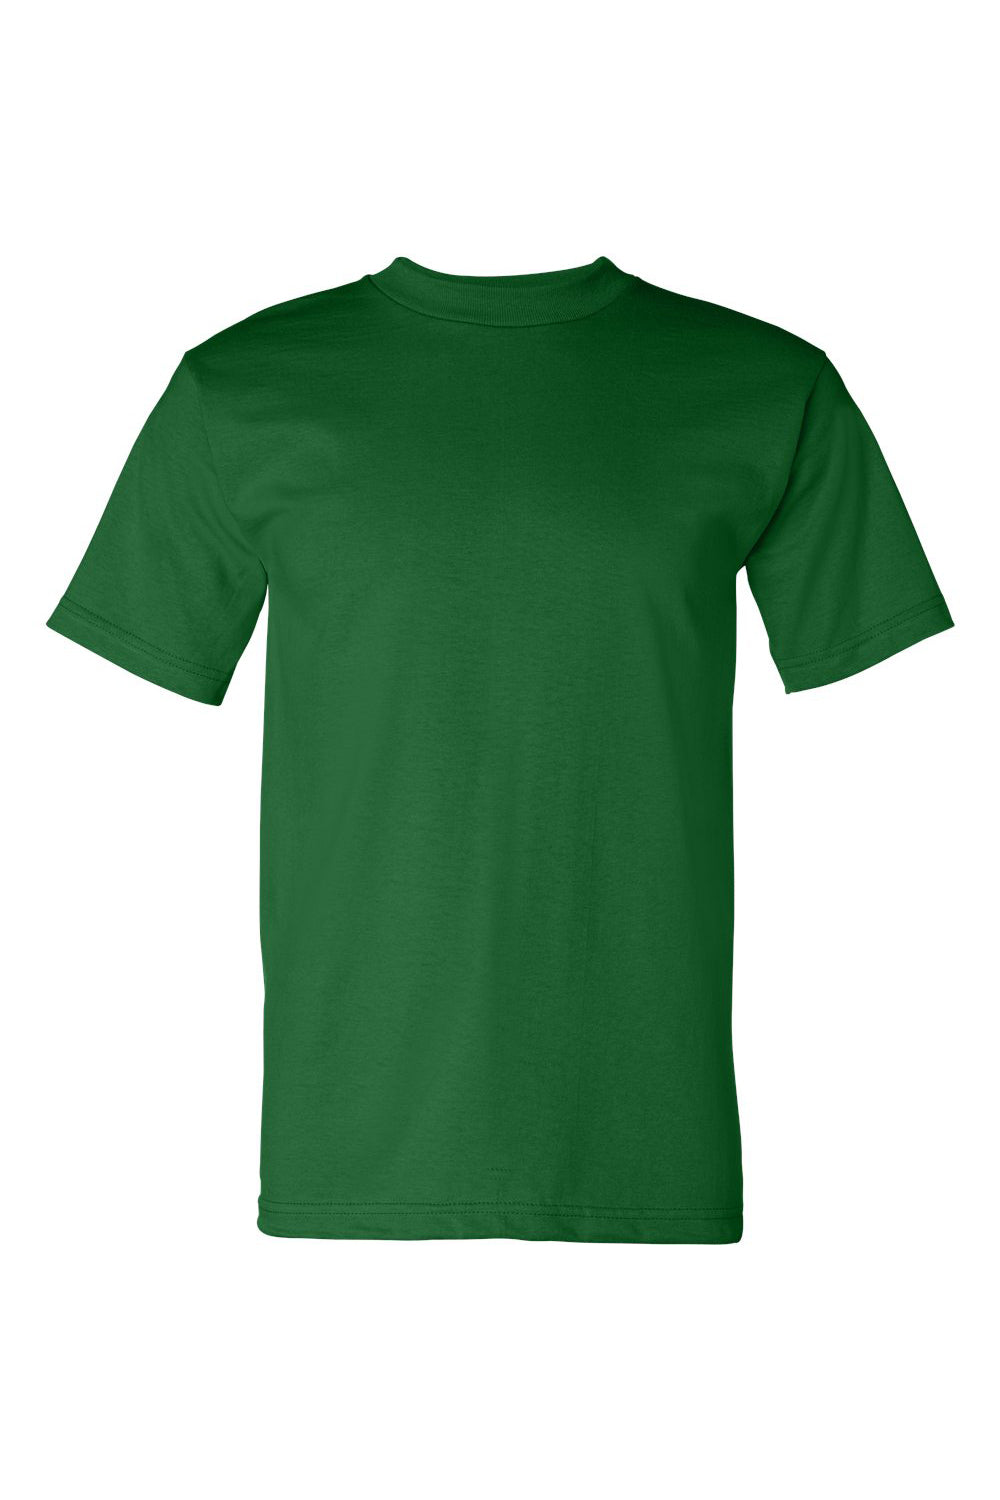 Bayside BA5100 Mens USA Made Short Sleeve Crewneck T-Shirt Kelly Green Flat Front